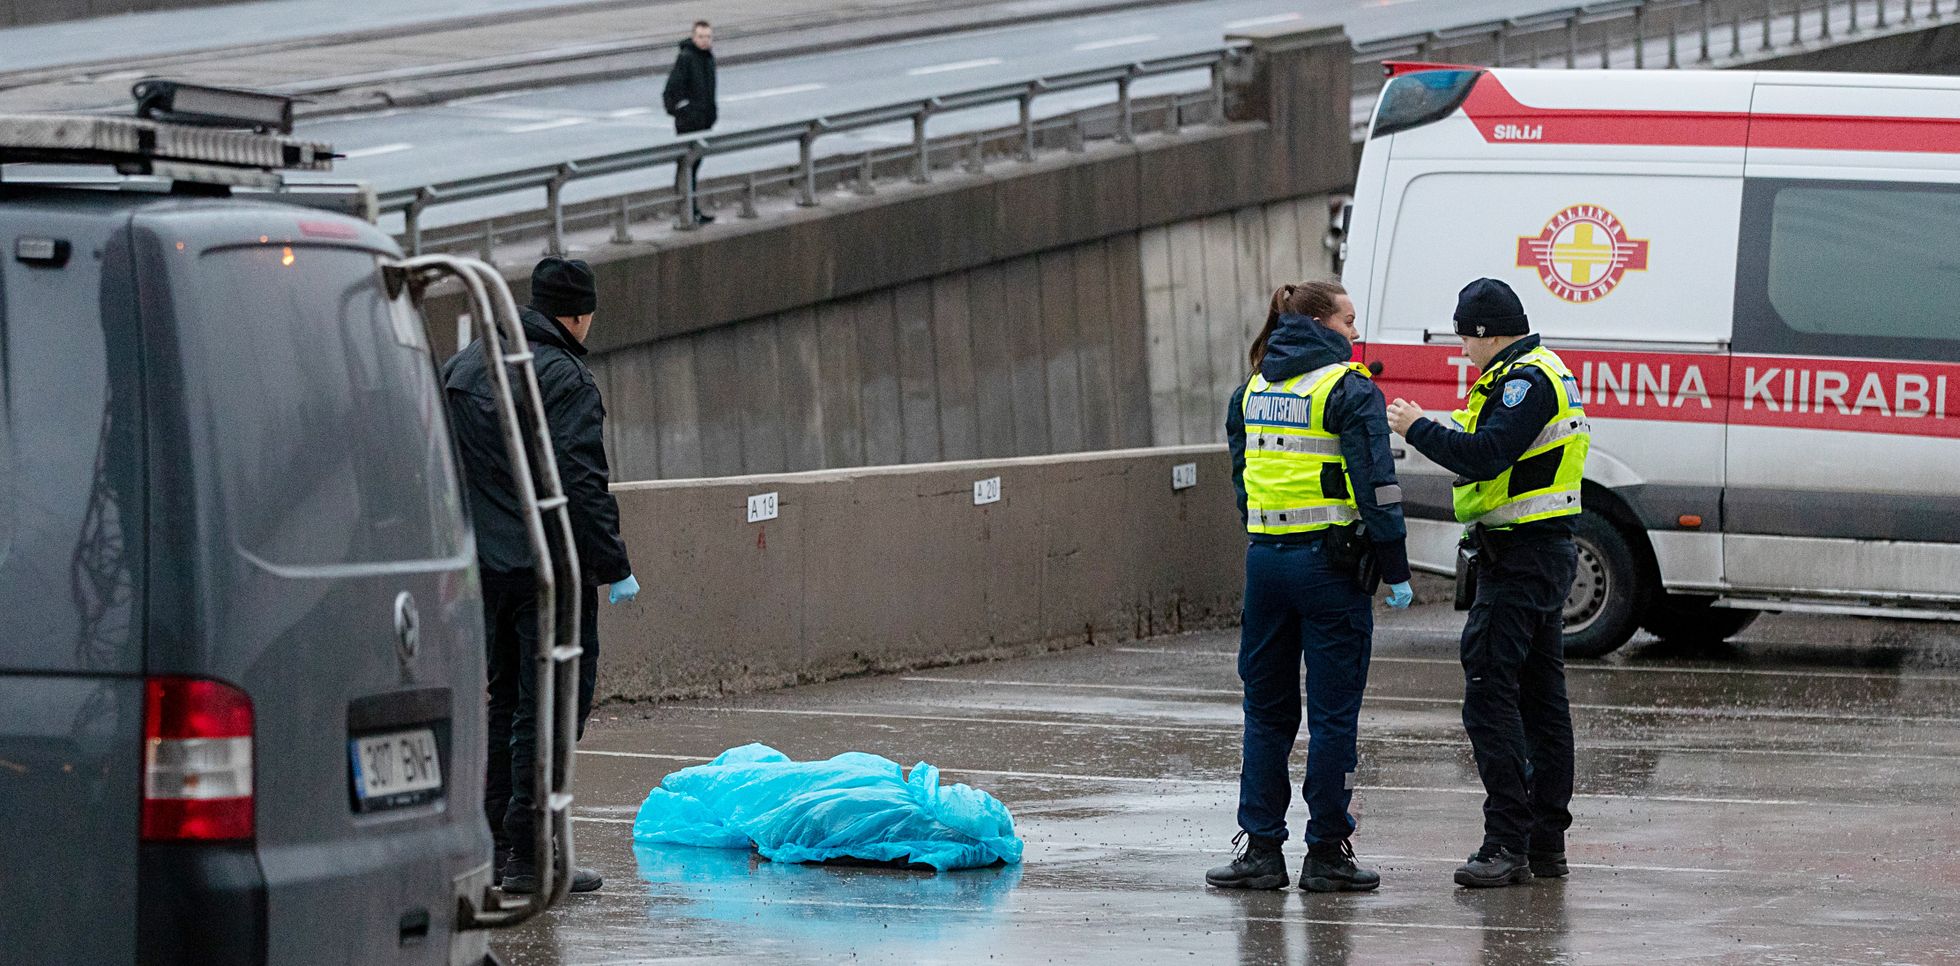 1 января в Таллинне на парковке на Пярнуском шоссе был найден мертвым 27-летний мужчина. По словам руководителя криминального бюро Пыхьяской префектуры Урмета Тамбре, он погиб в результате несчастного случая.